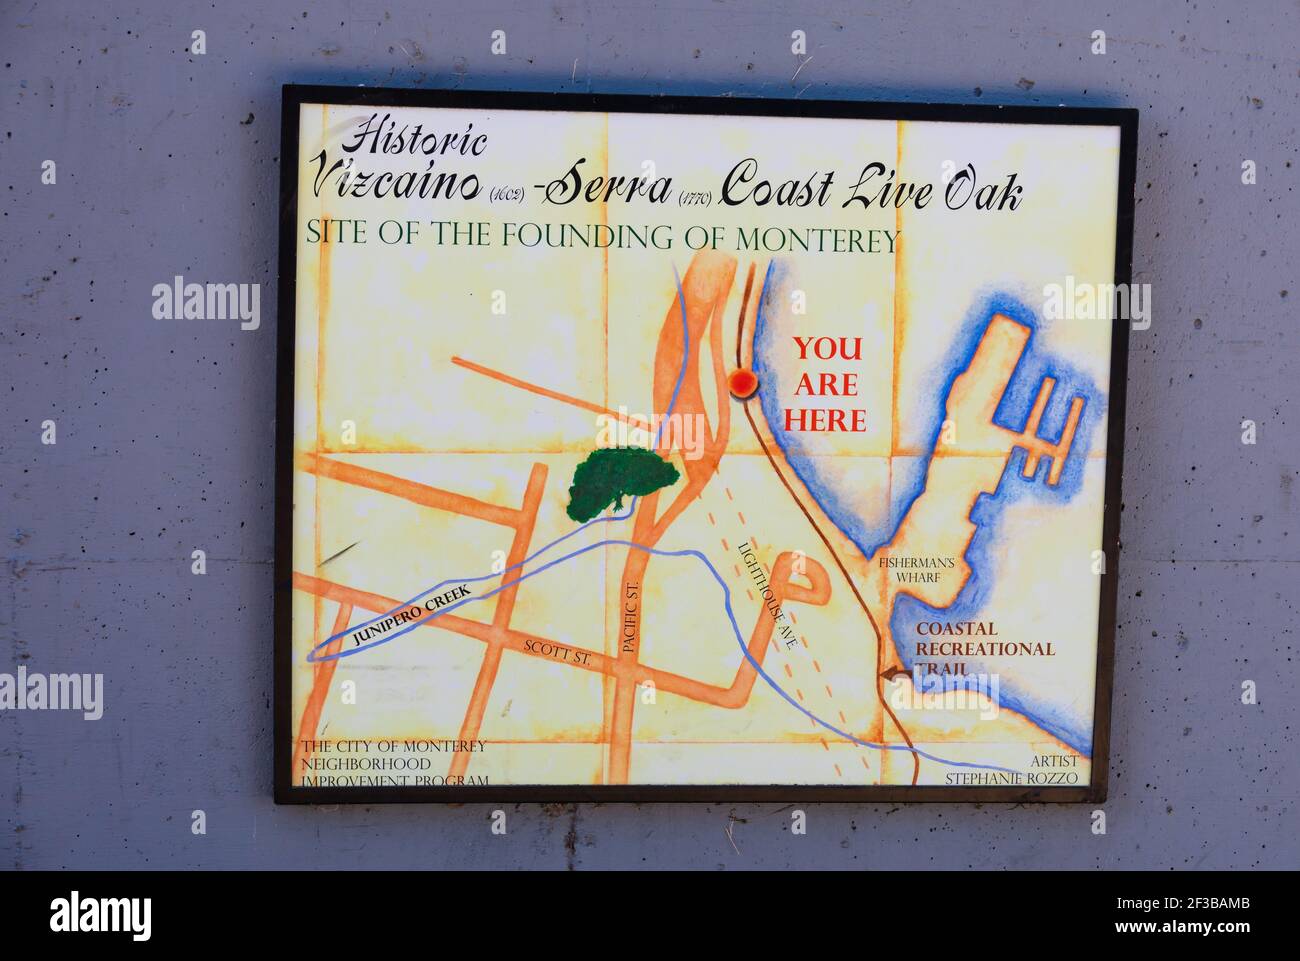 Firma con mapa que muestra el sitio de la fundación de Monterey.Old Monterey, California, Estados Unidos de América. Foto de stock